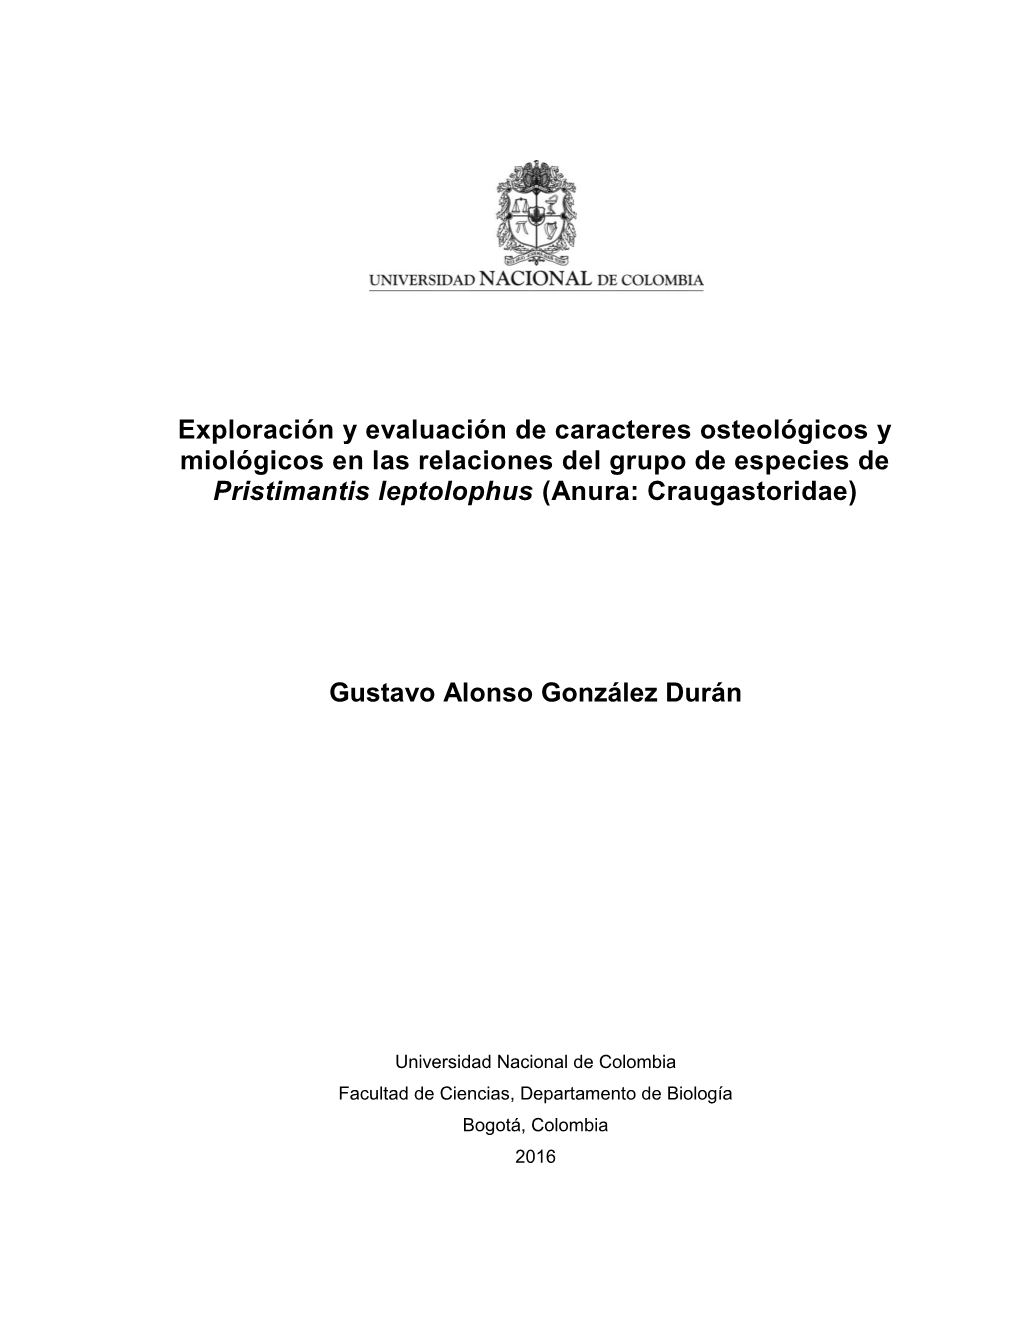 Exploración Y Evaluación De Caracteres Osteológicos Y Miológicos En Las Relaciones Del Grupo De Especies De Pristimantis Leptolophus (Anura: Craugastoridae)